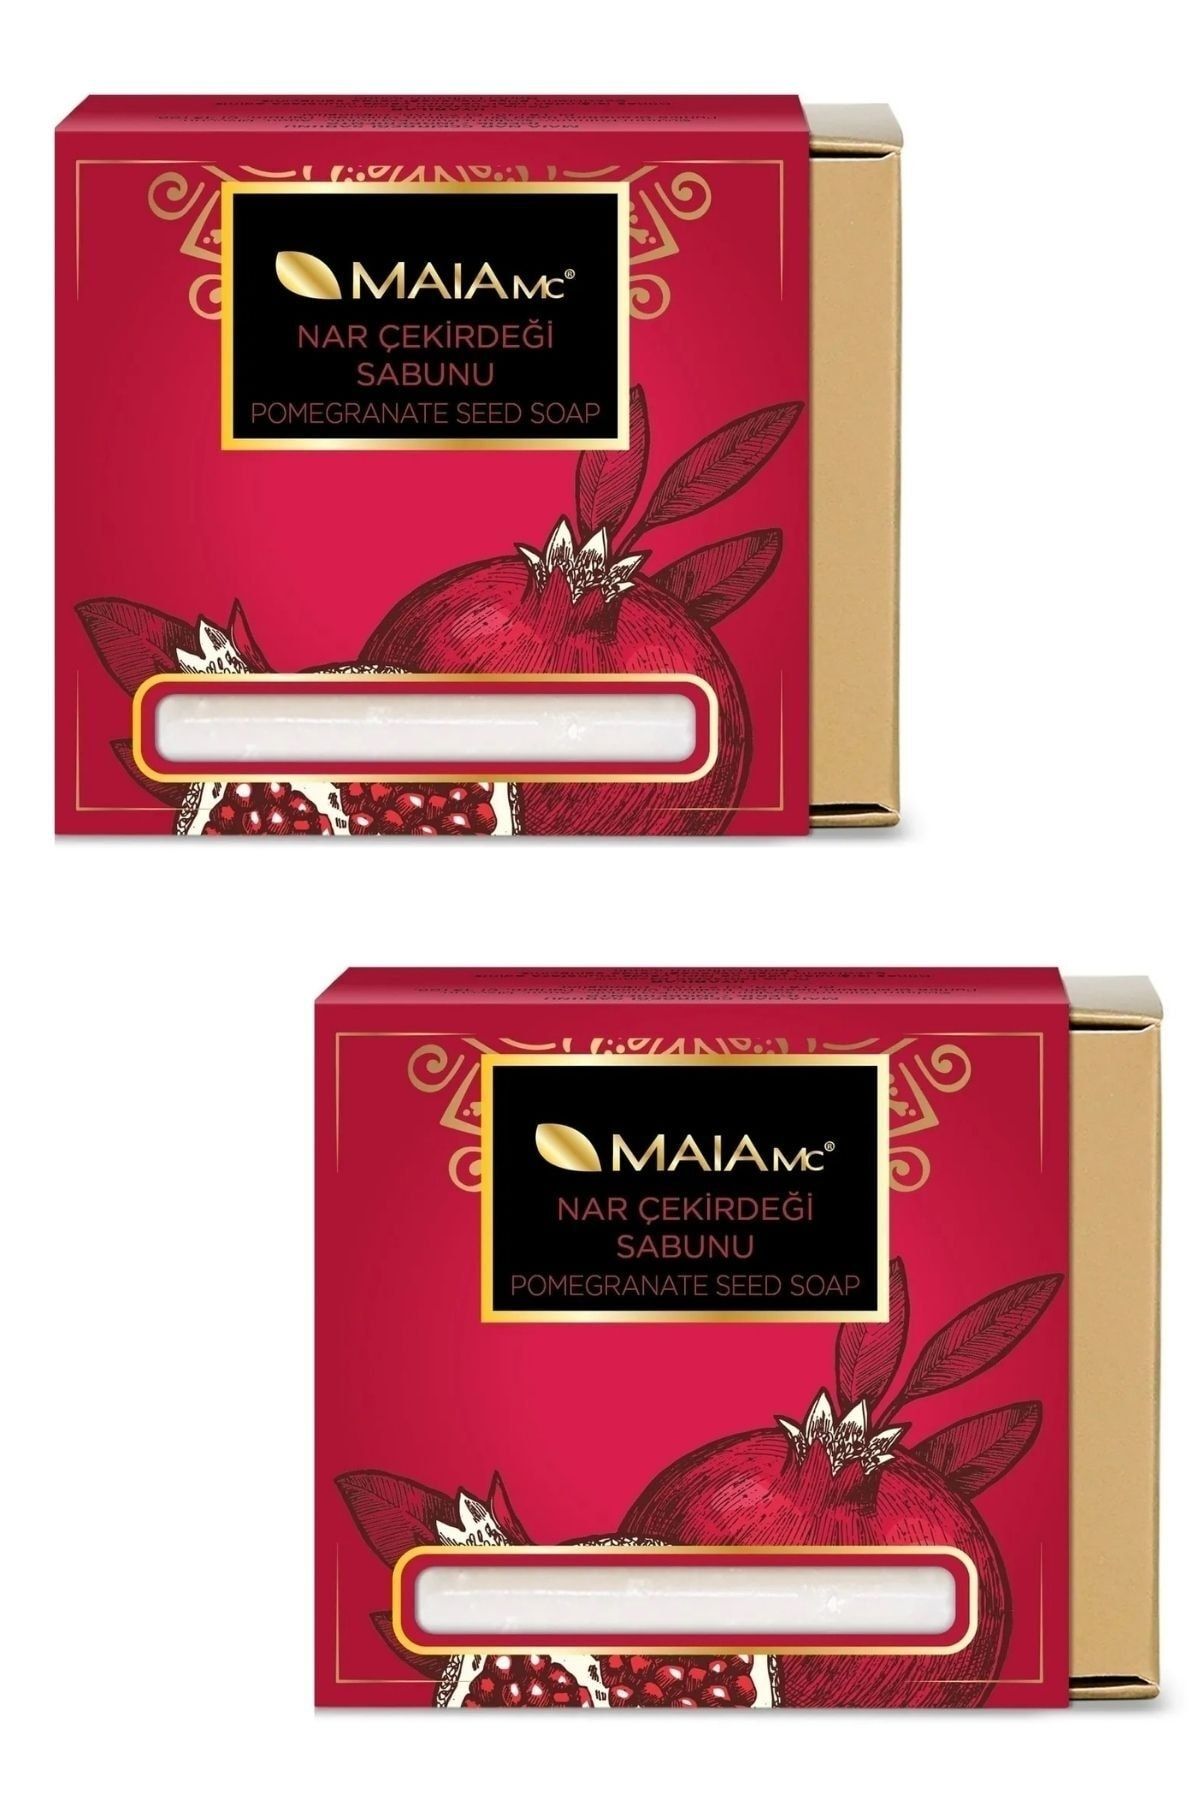 Maia mc Nar Çiçeği Sabunu Antioksidan Etkili 150 gr X 2 Adet